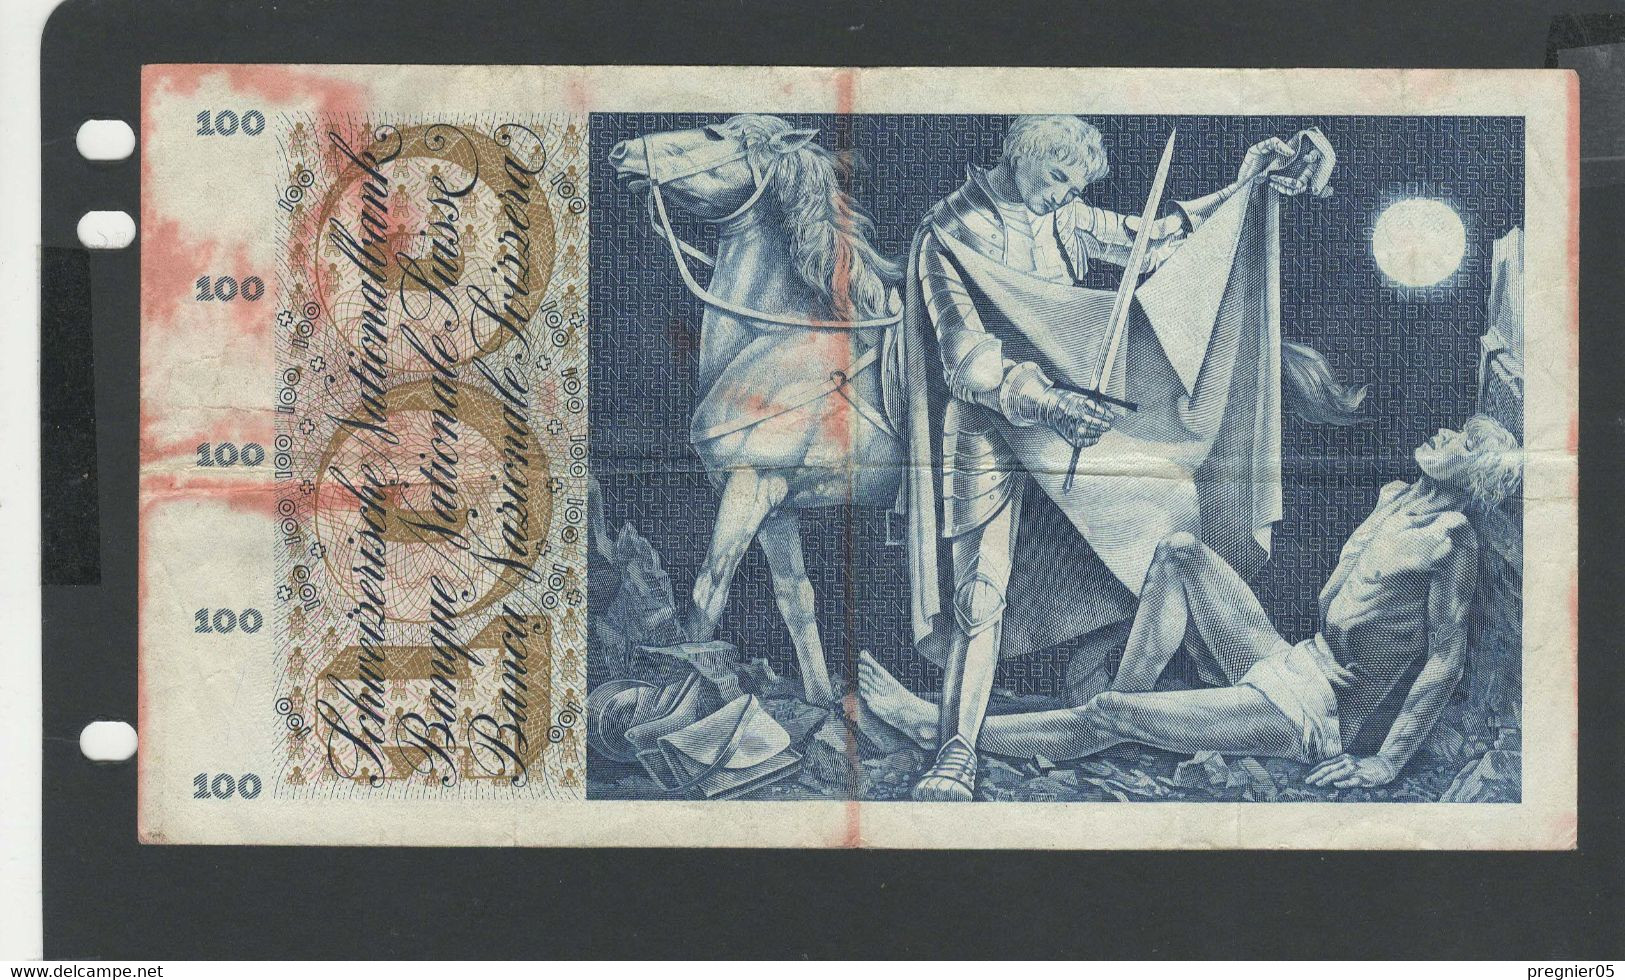 SUISSE - Billet 100 Francs 1957 TB/F Pick-49b N° 74493 - Suisse